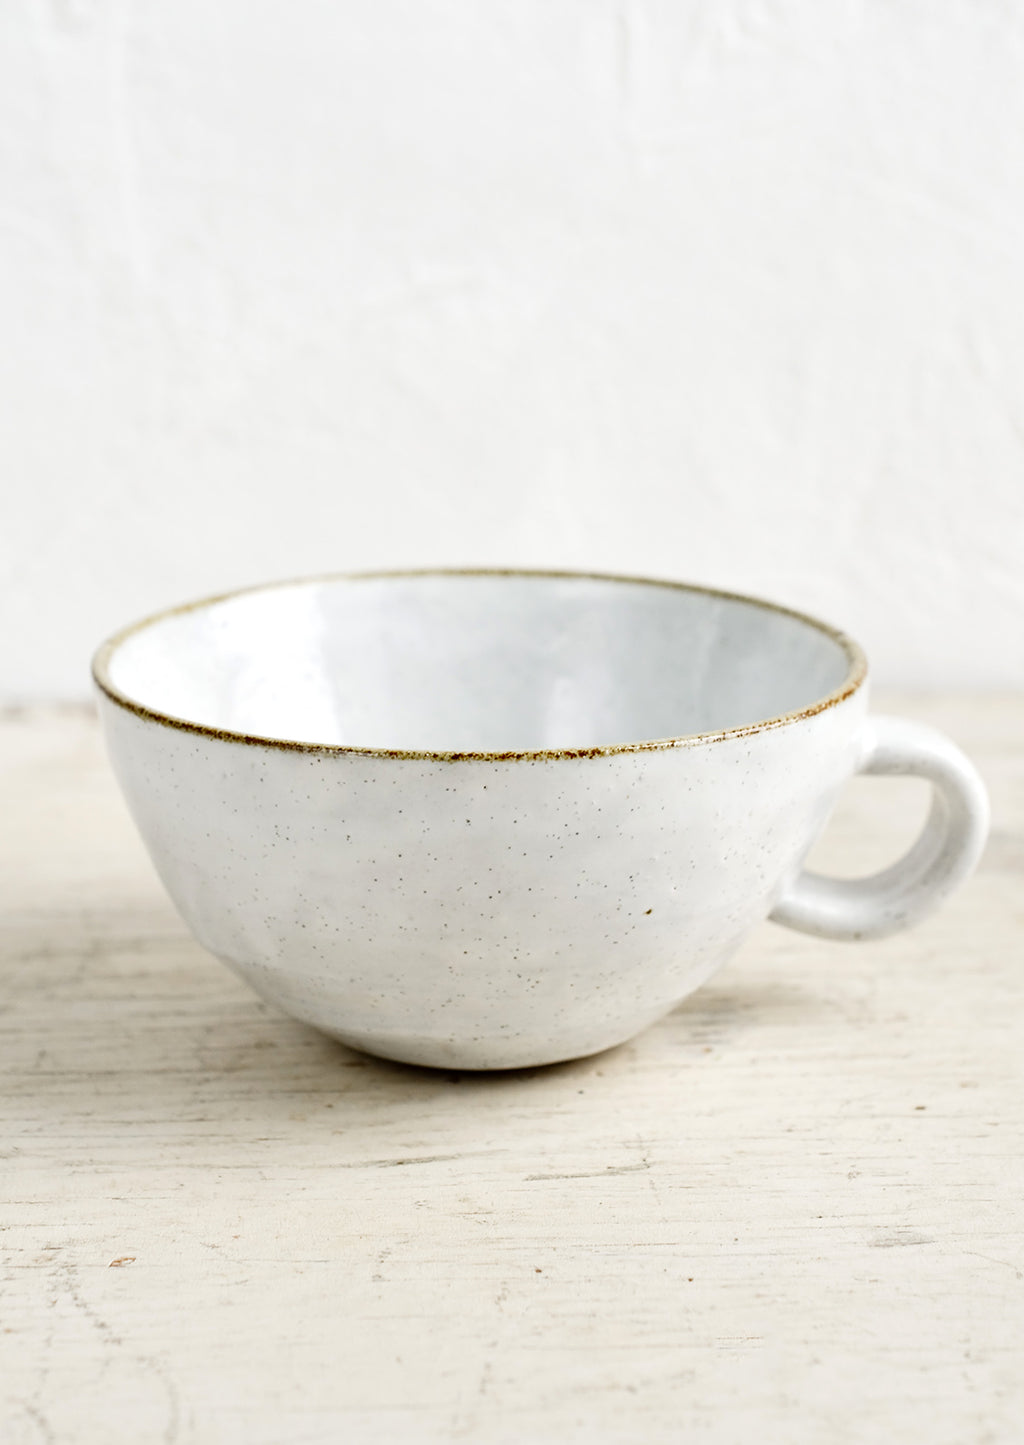 Glossy White / Latte Mug: A ceramic latte mug in a glossy white glaze with soft speckles.